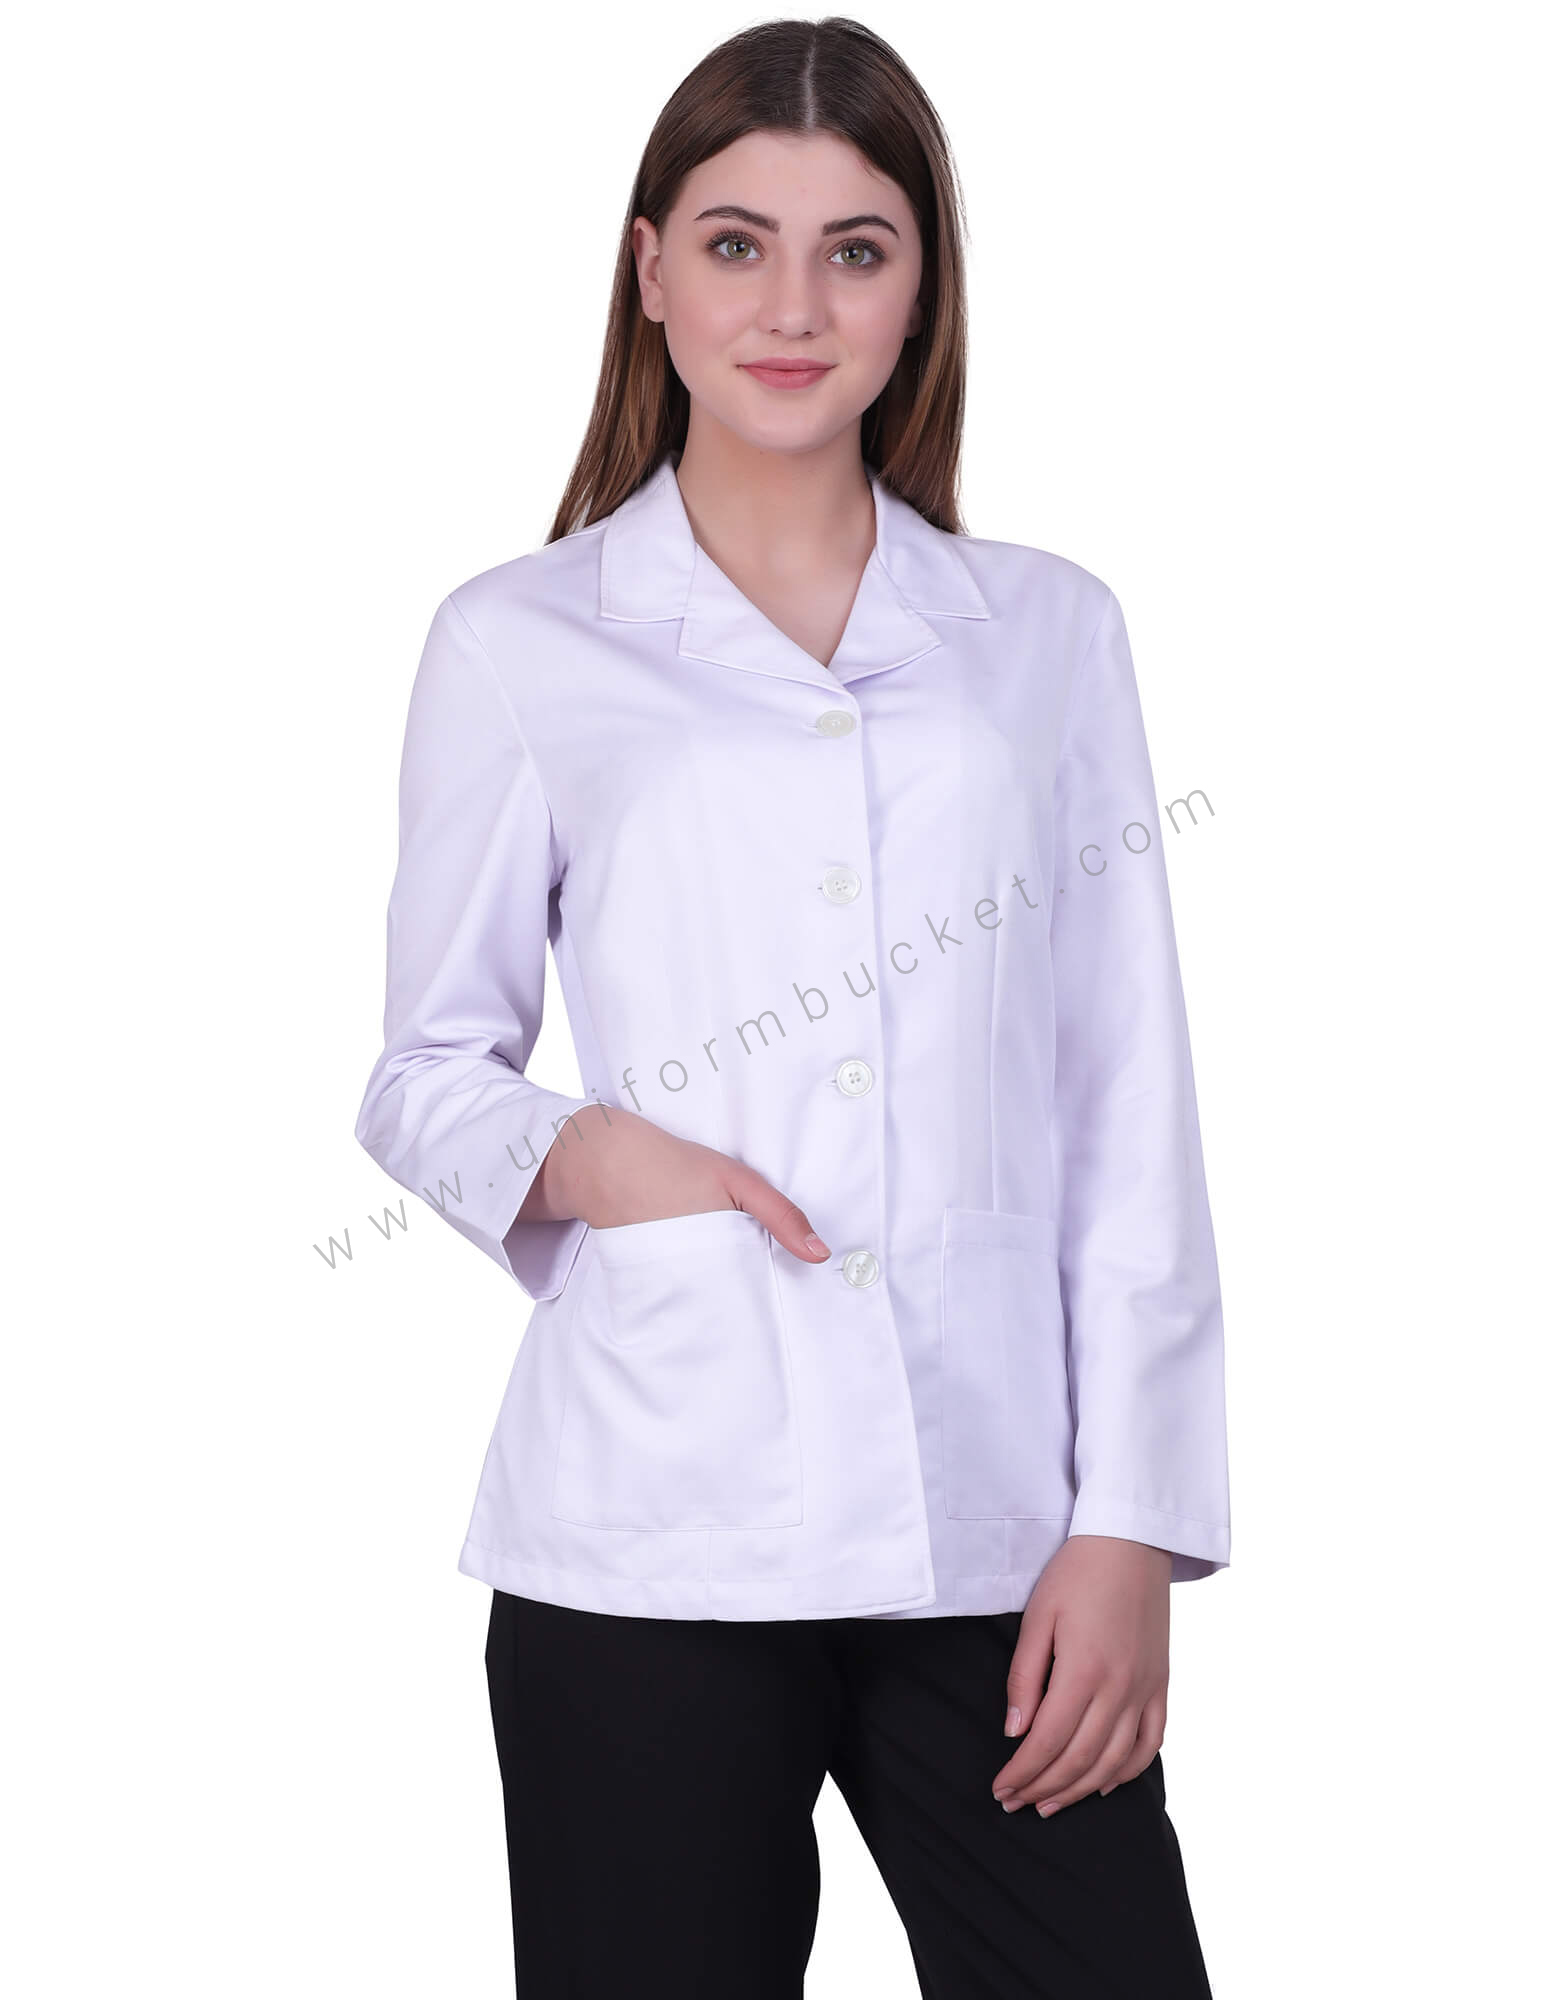 Full Sleeves Lab Coat For Women